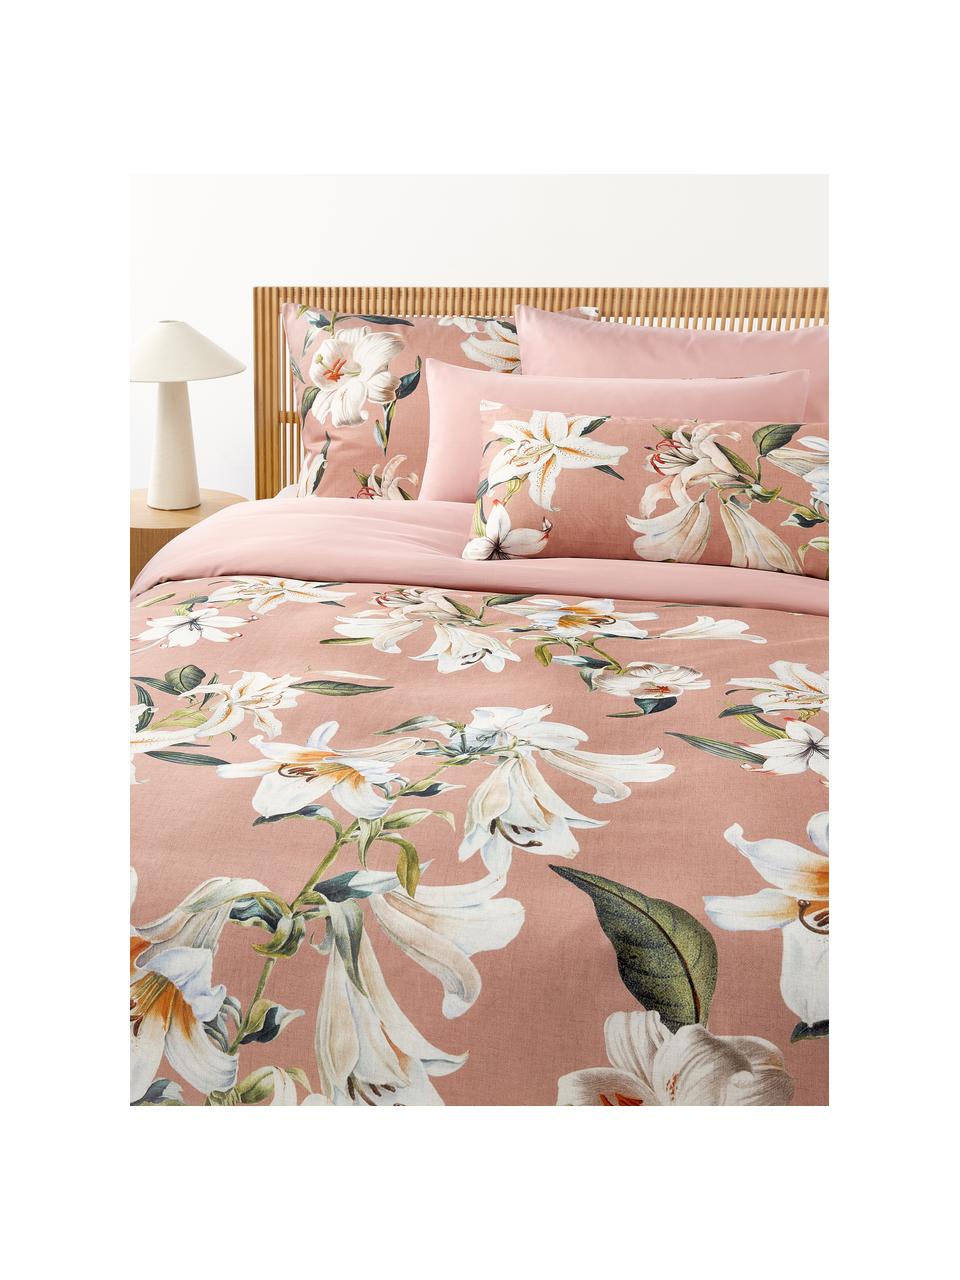 Funda de almohada de satén Flori, Rosa palo, multicolor, An 45 x L 110 cm